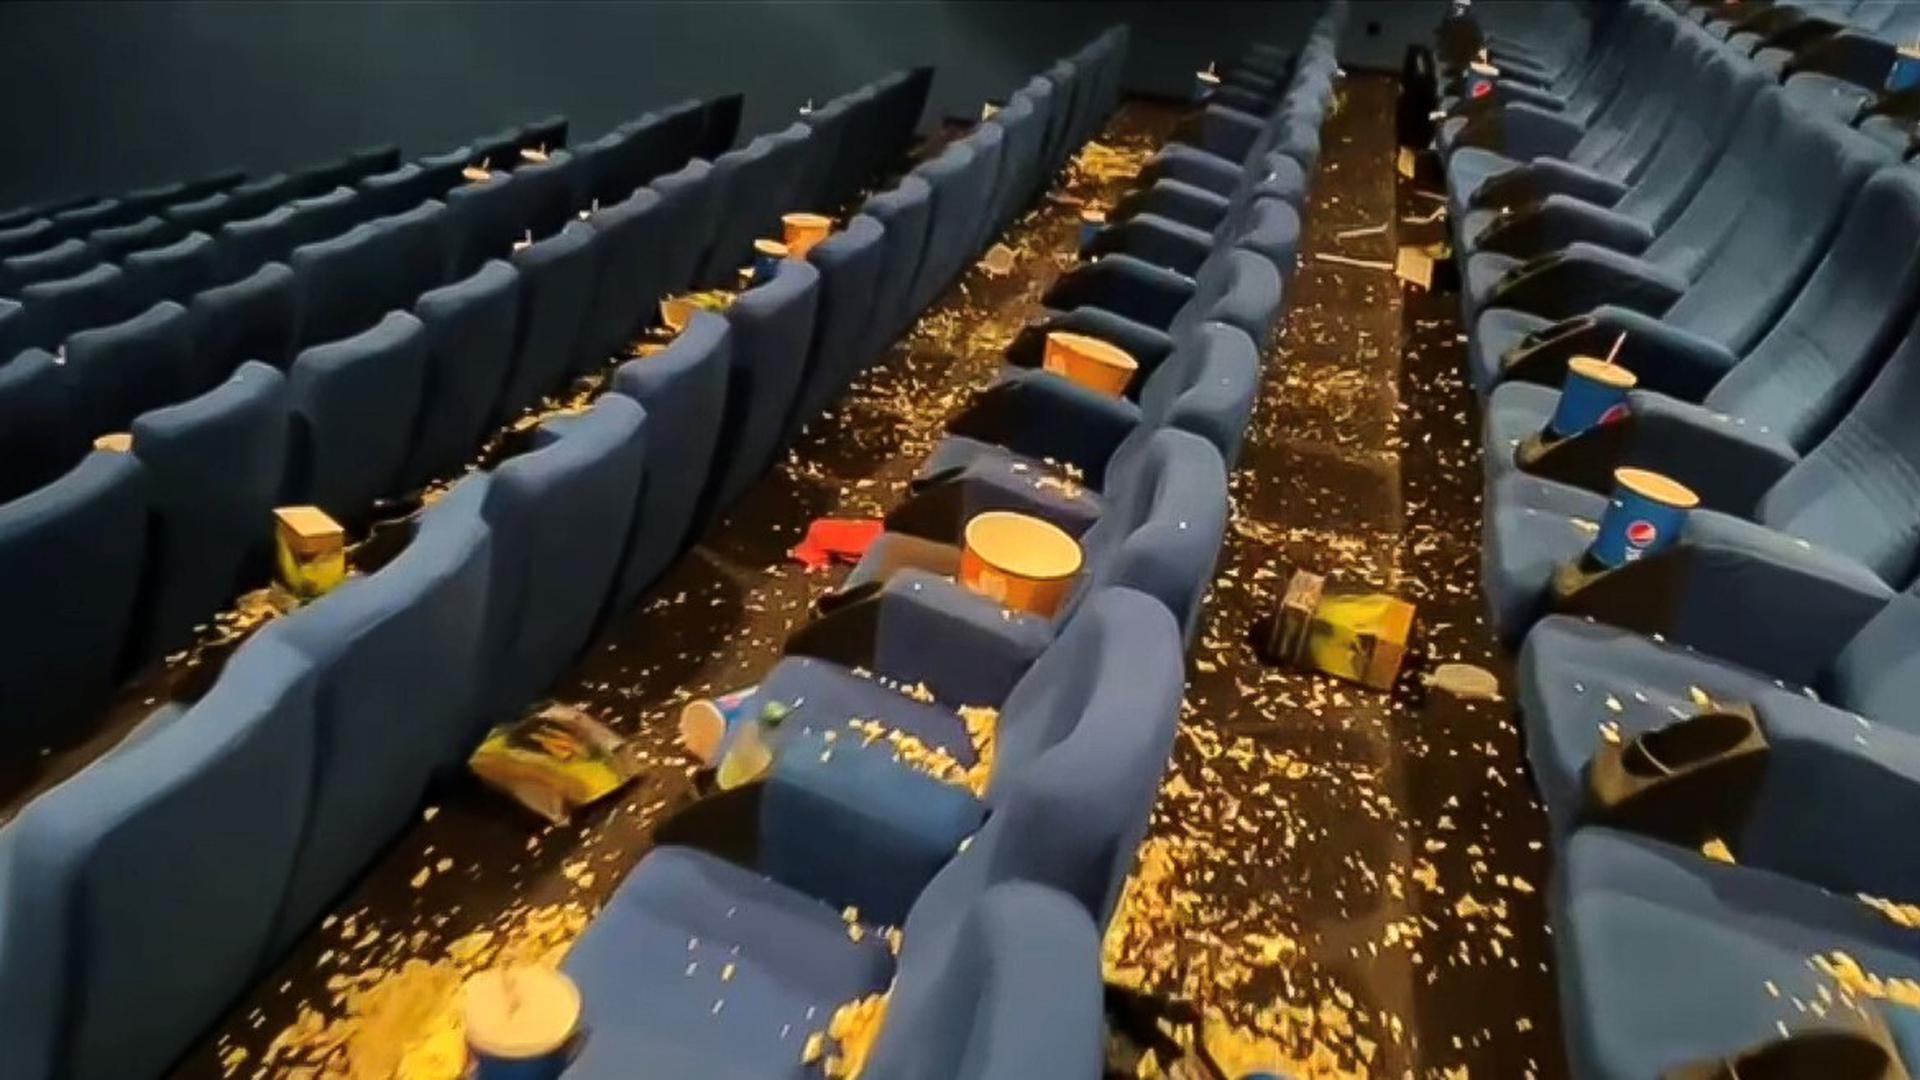 Überbleibsel: Nach jeder Vorstellung liegt etwas Popcorn auf dem Boden, doch nach dem Minions-Film waren selbst die Betreiber schockiert. 